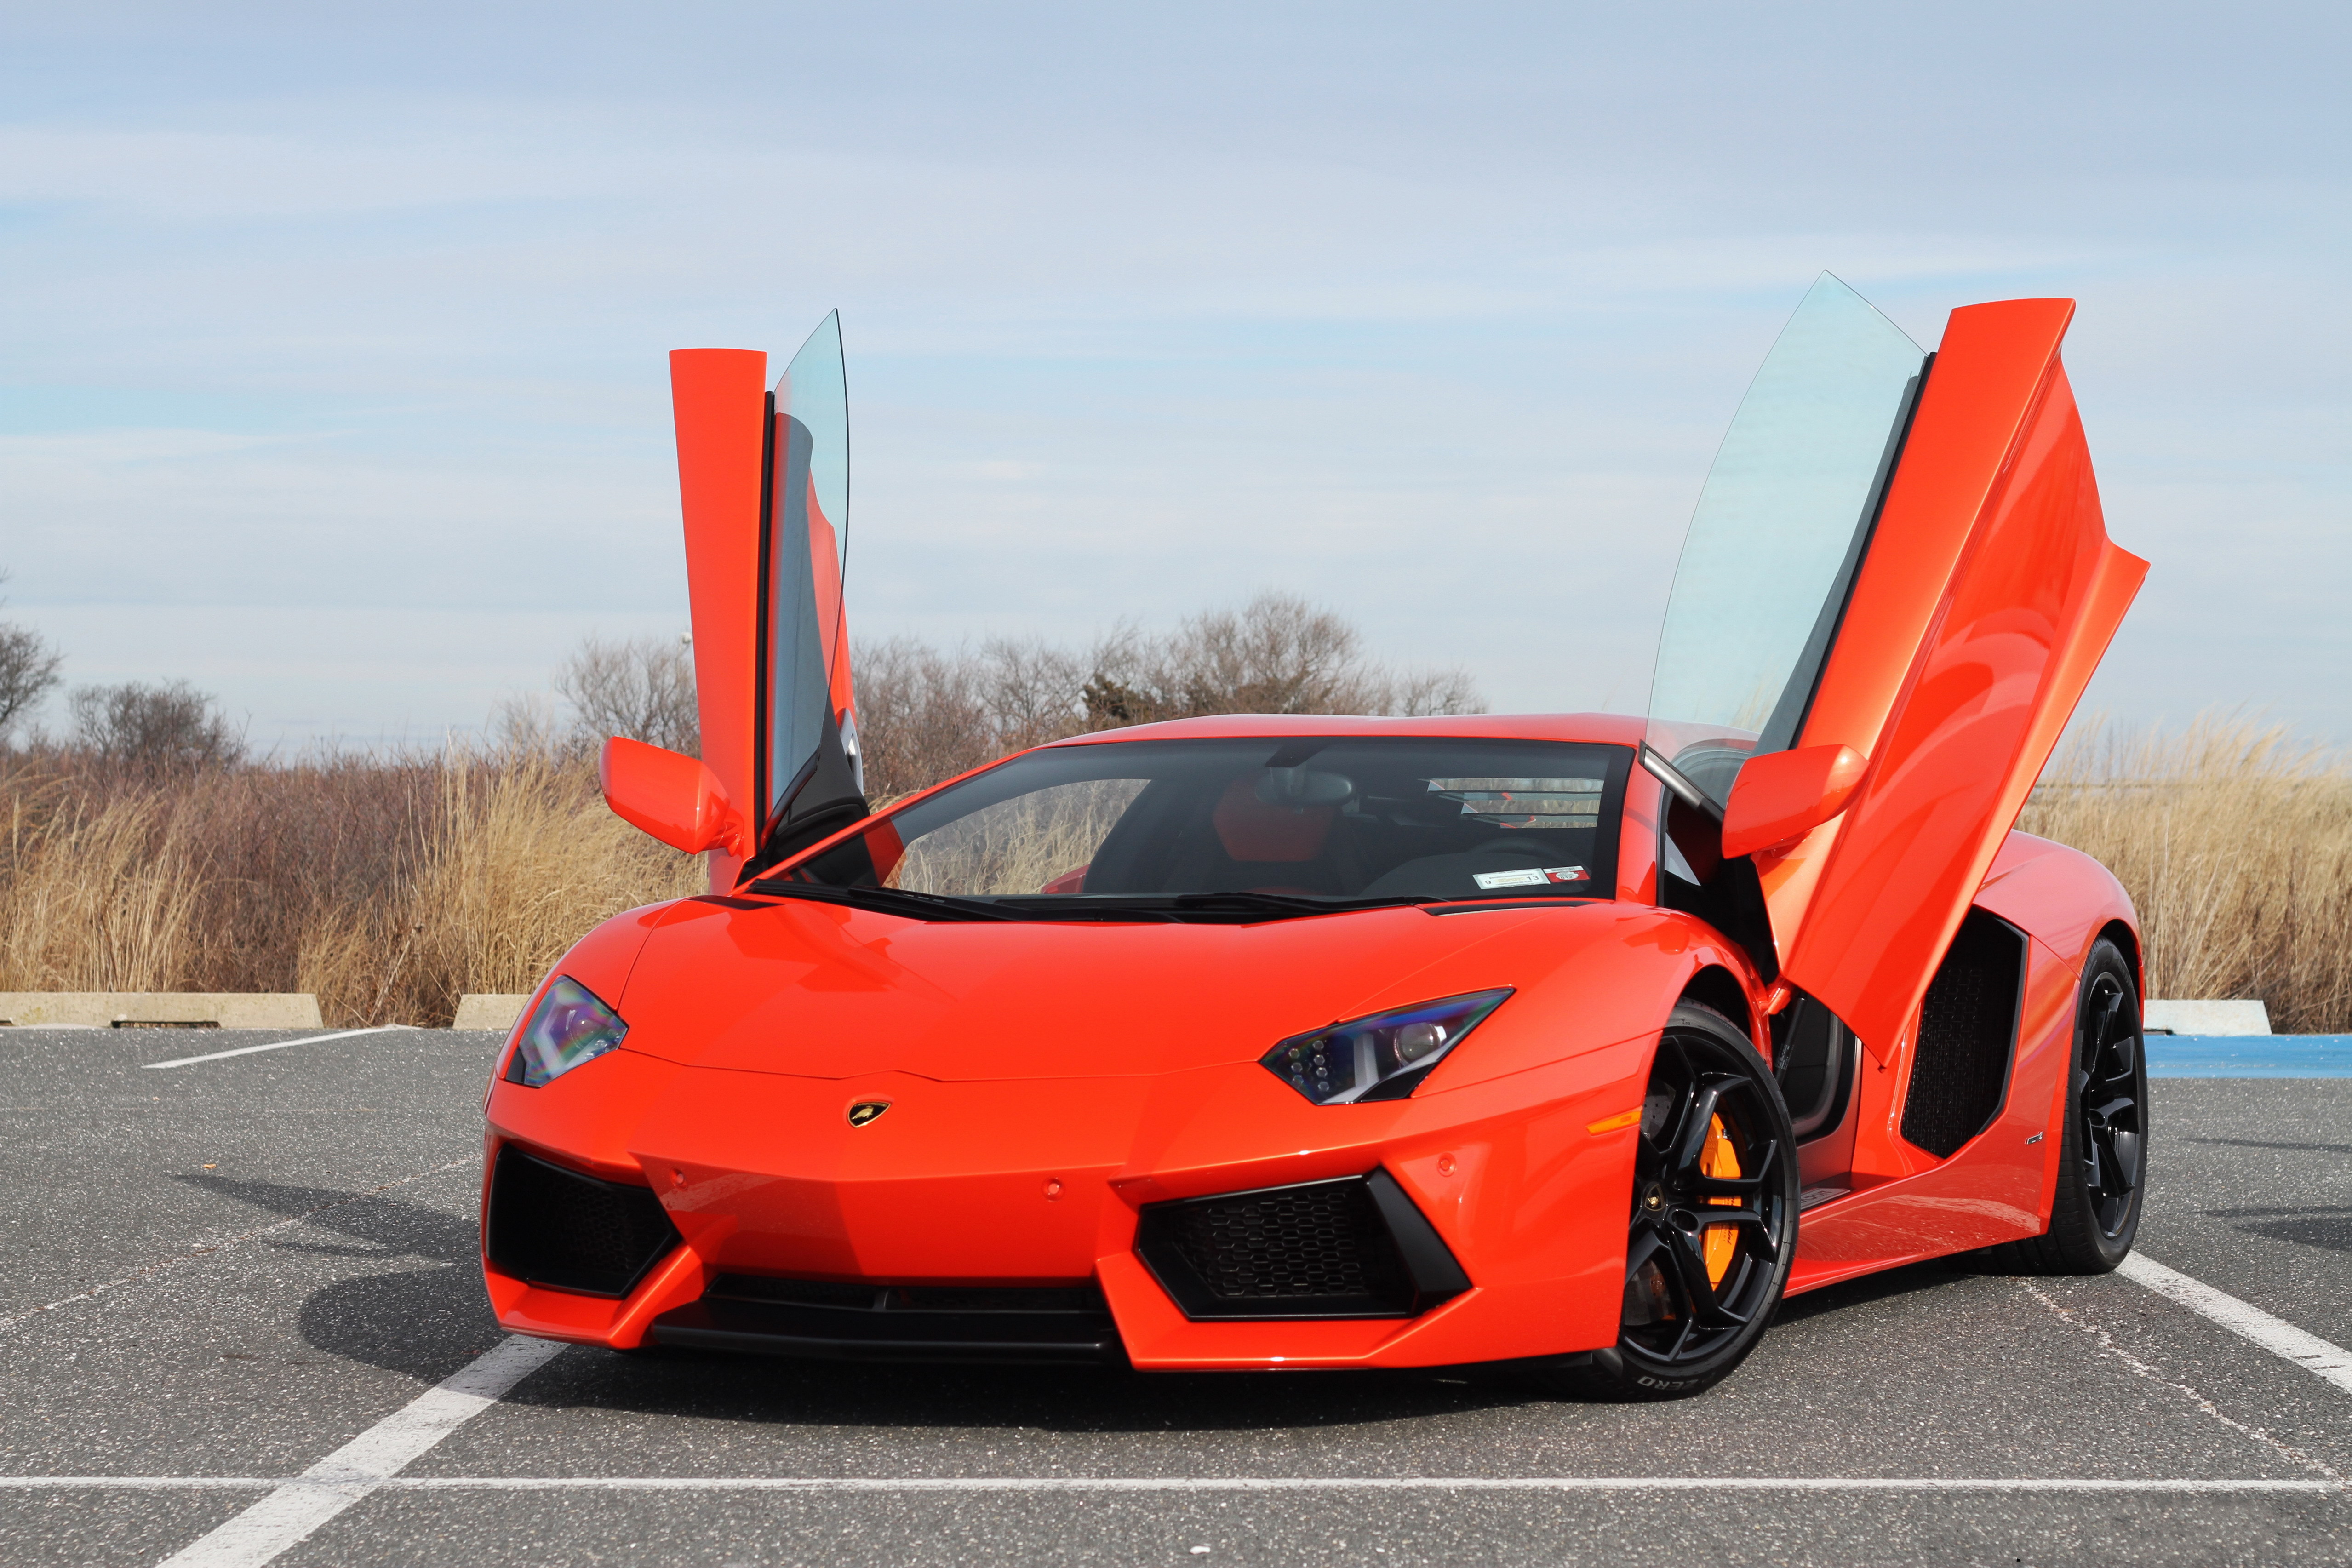 Images Lamborghini Opened Door Lp700 4 Parking Expensive Orange Auto